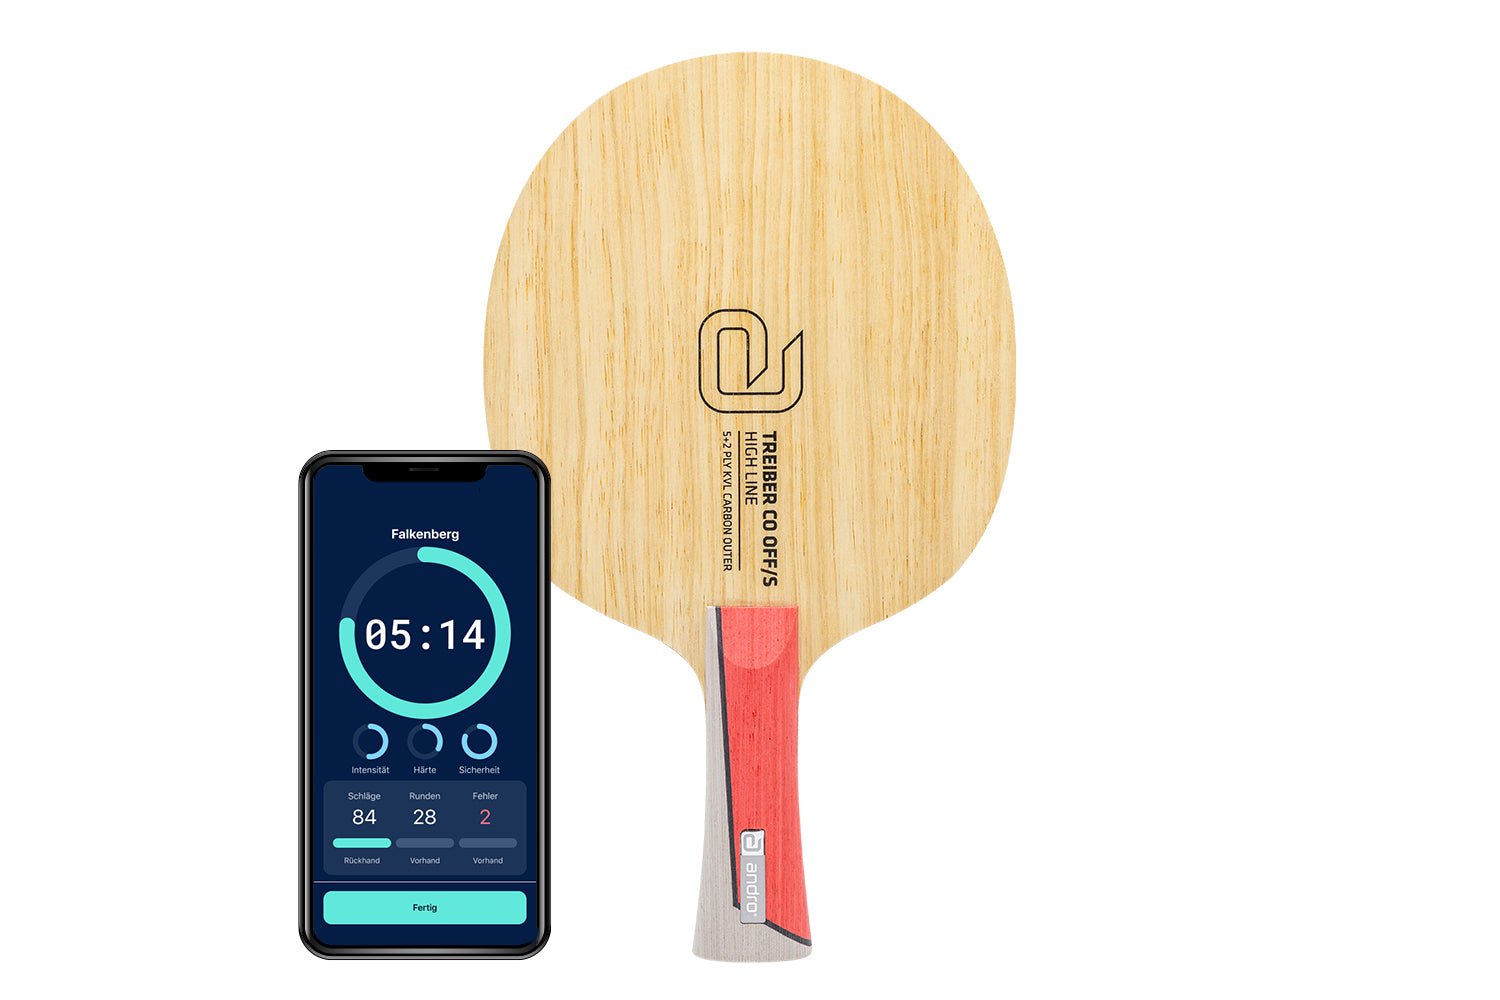 andro Treiber CO OFF/S Tischtennisschläger mit konkaven Griff und Smartphone zeigt Daten des Schlägers vor weißem Hintergrund